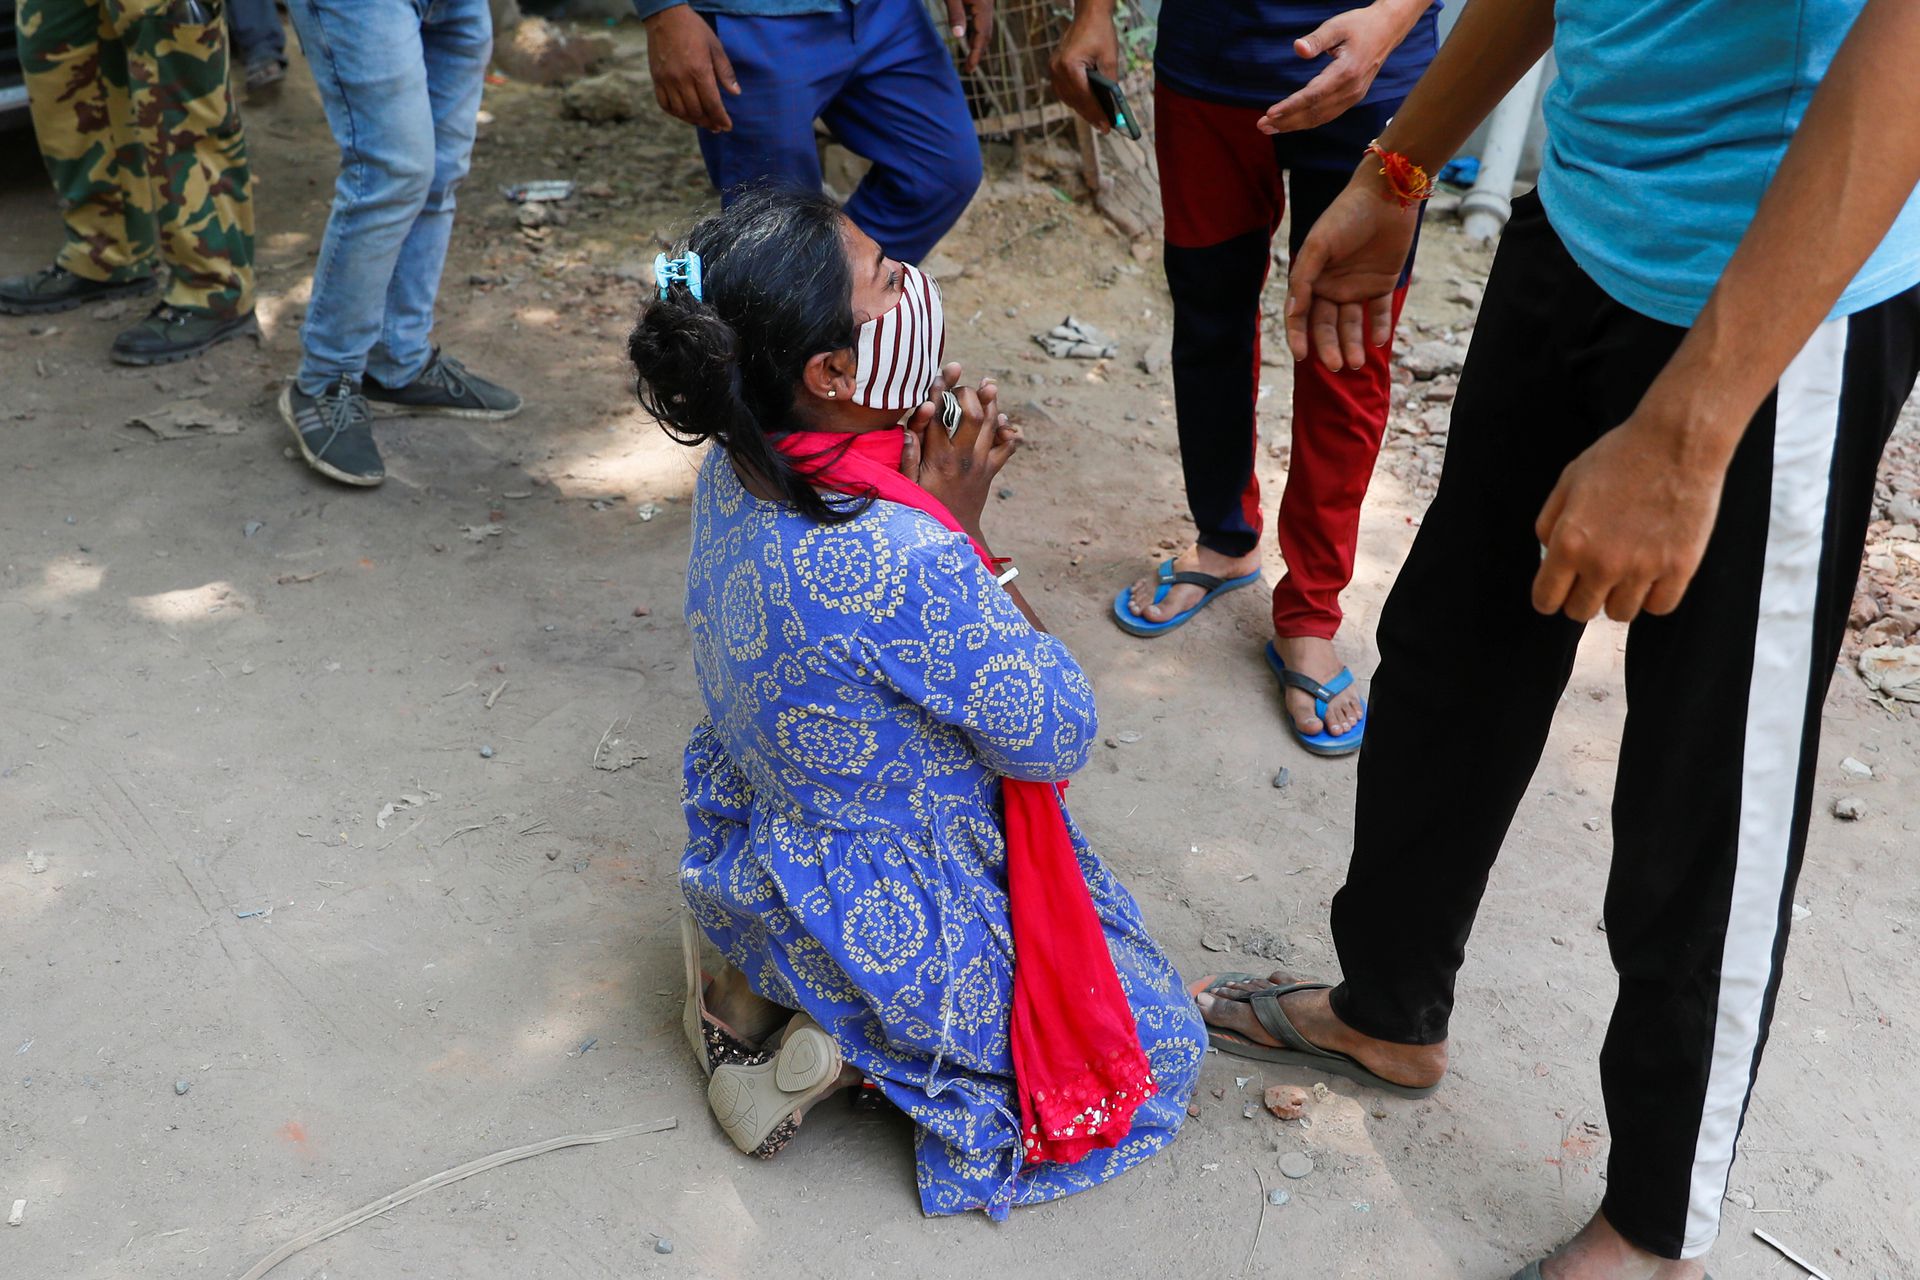 ये तस्वीर बीते 28 अप्रैल की है. दिल्ली में एक रिफिलिंग सेंटर के बाहर अपनी मां के लिए श्रुति साहा 27 अप्रैल से ऑक्सीजन सिलेंडर भरने का इंतजार कर रही थीं. इसी दौरान उन्हें अपनी मां के निधन का समाचार मिला तो वो जमीन पर बैठकर रोने लगीं. (फोटो: रॉयटर्स)